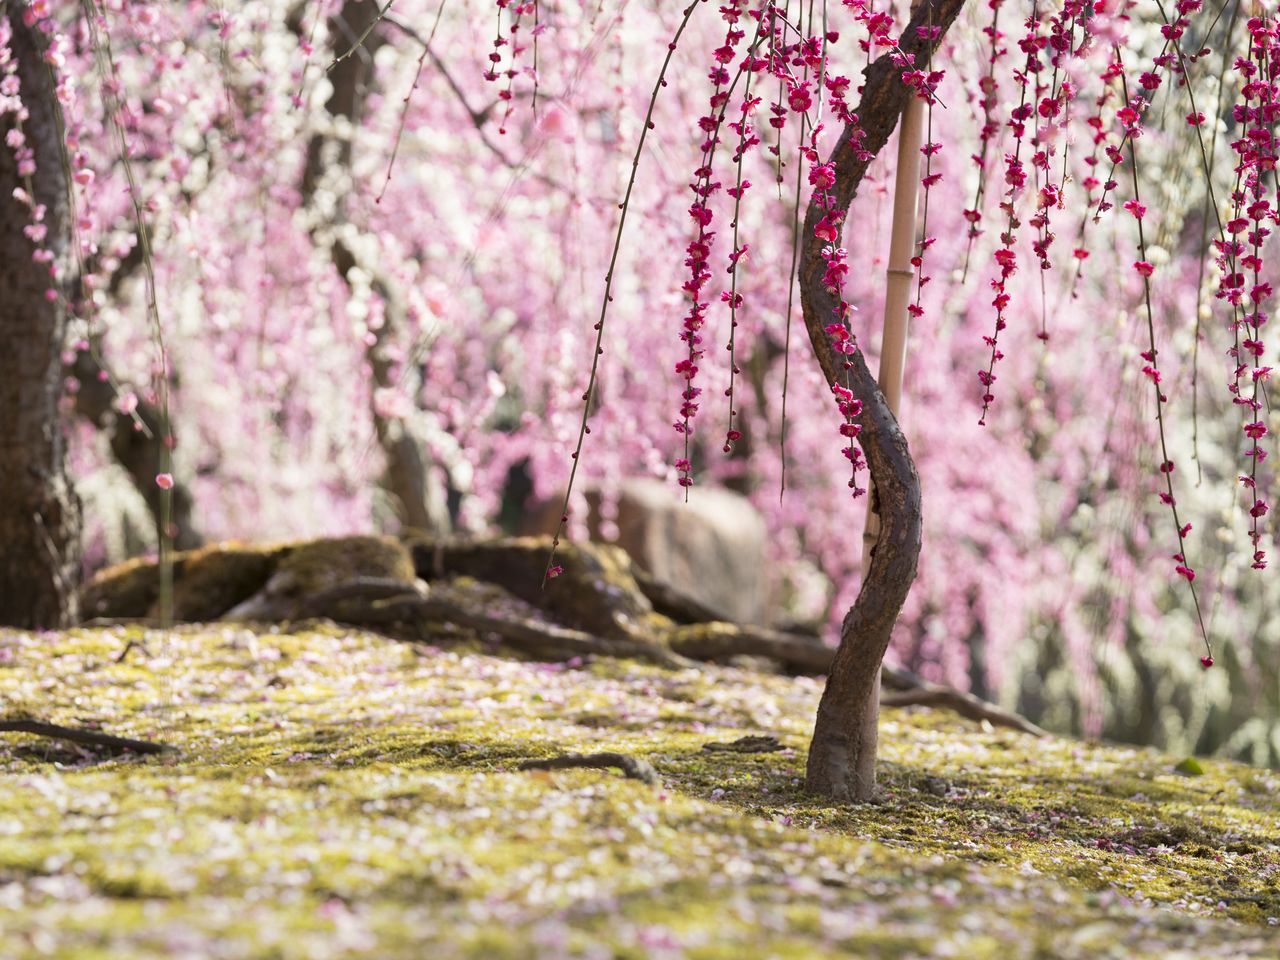 コケの上に落ちた梅の花びらも美しいと、見ごろが過ぎてから訪れる人も多い